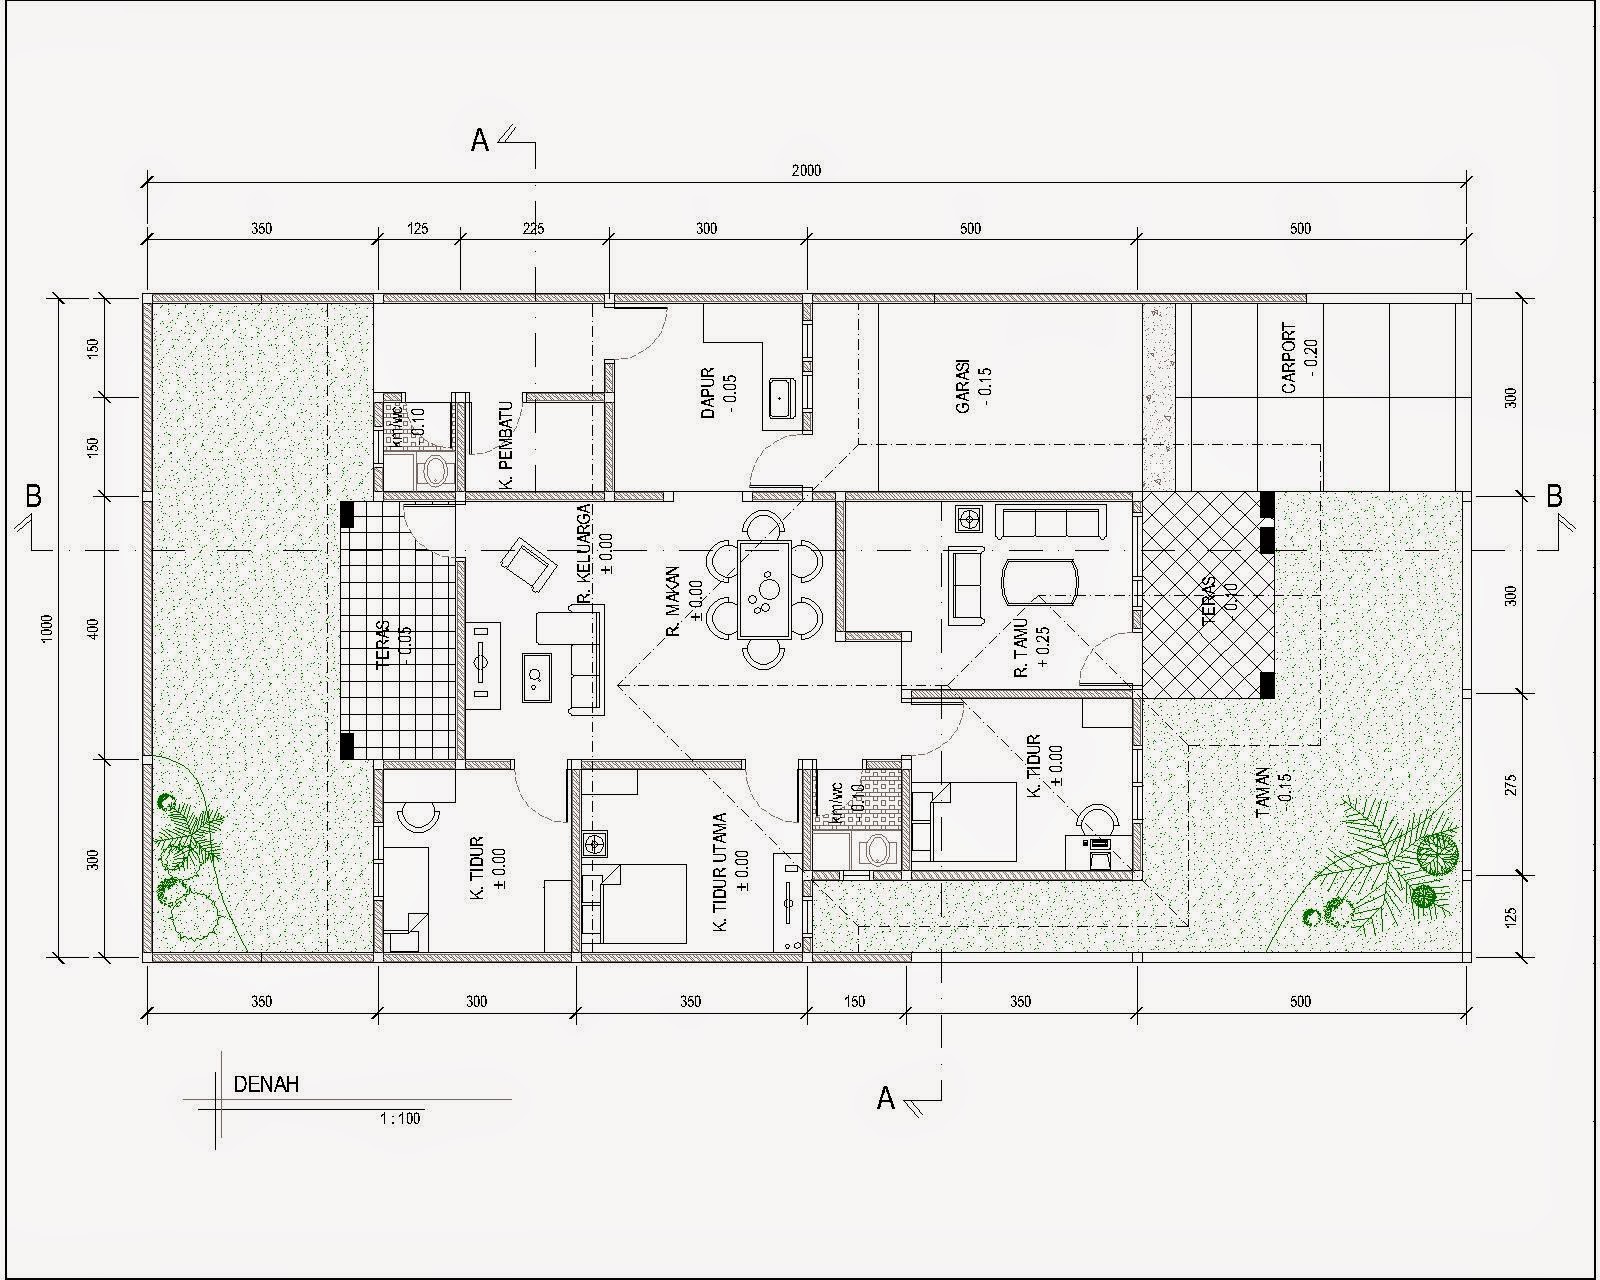 63 Desain Rumah Minimalis Dwg  Desain Rumah Minimalis Terbaru